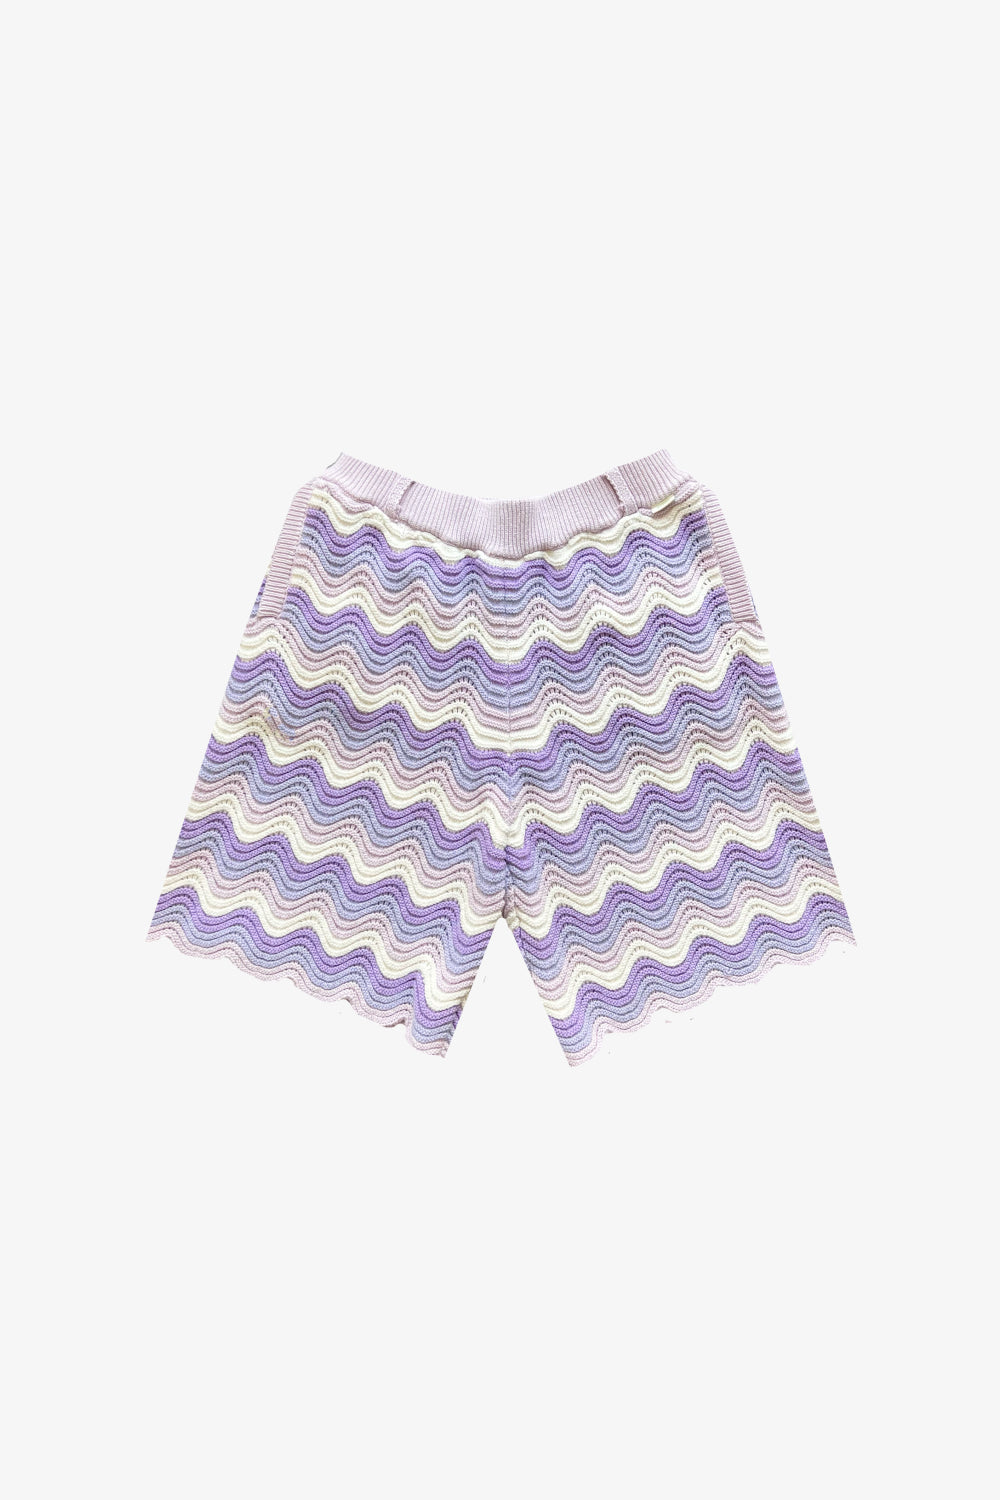 Lavender Gradient Shorts